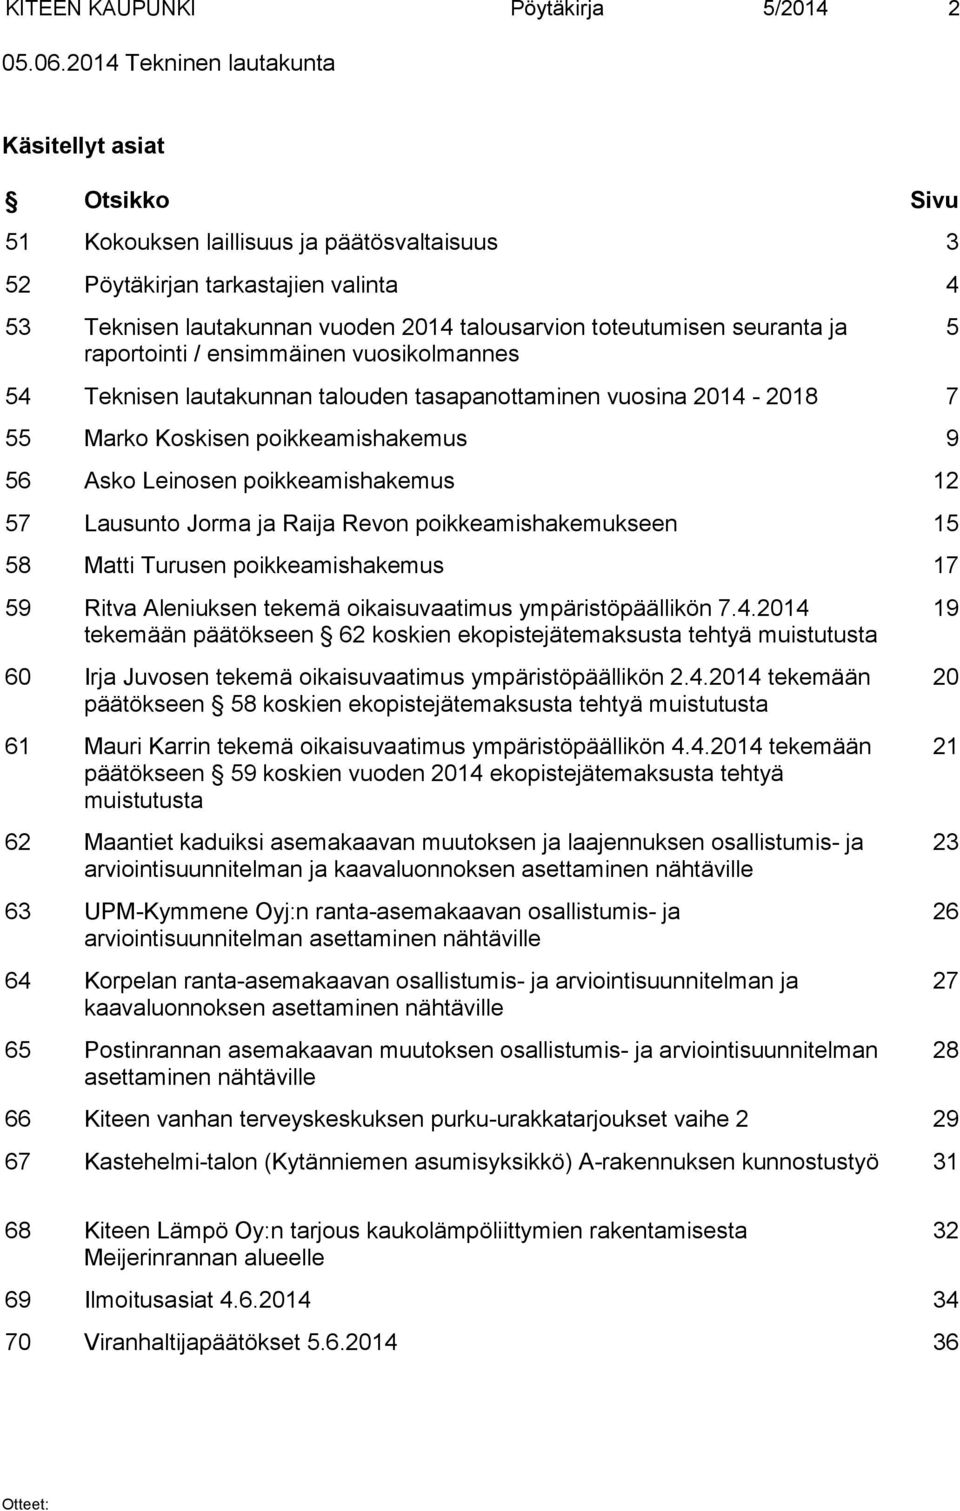 toteutumisen seuranta ja raportointi / ensimmäinen vuosikolmannes 54 Teknisen lautakunnan talouden tasapanottaminen vuosina 2014-2018 7 55 Marko Koskisen poikkeamishakemus 9 56 Asko Leinosen